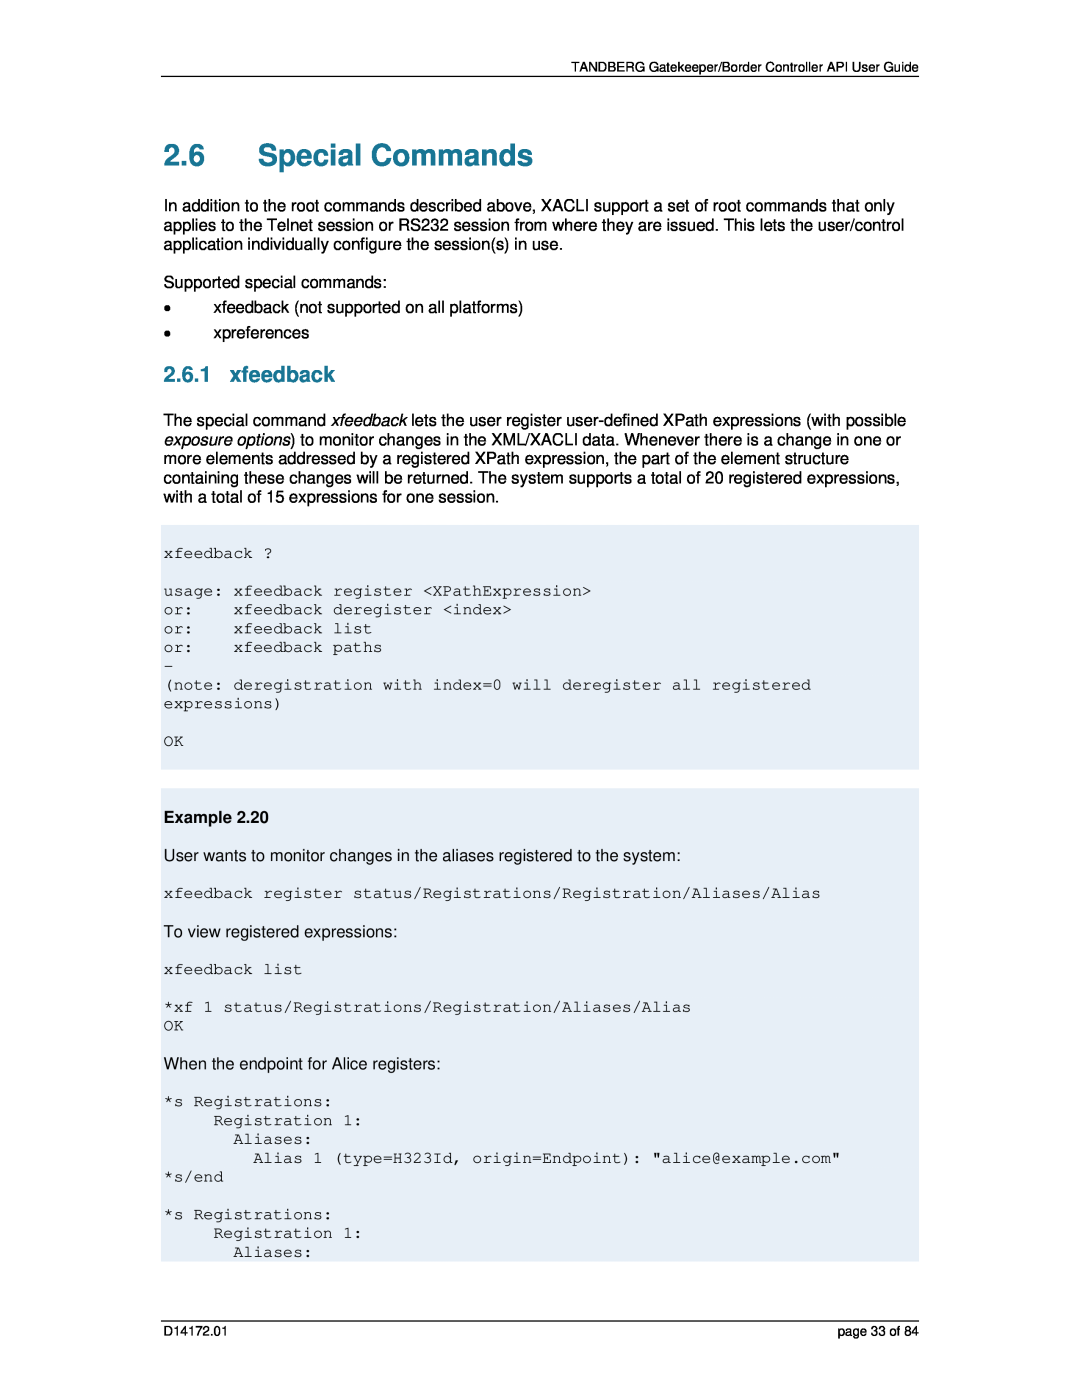 TANDBERG D14172.01 manual Special Commands, xfeedback, Example 